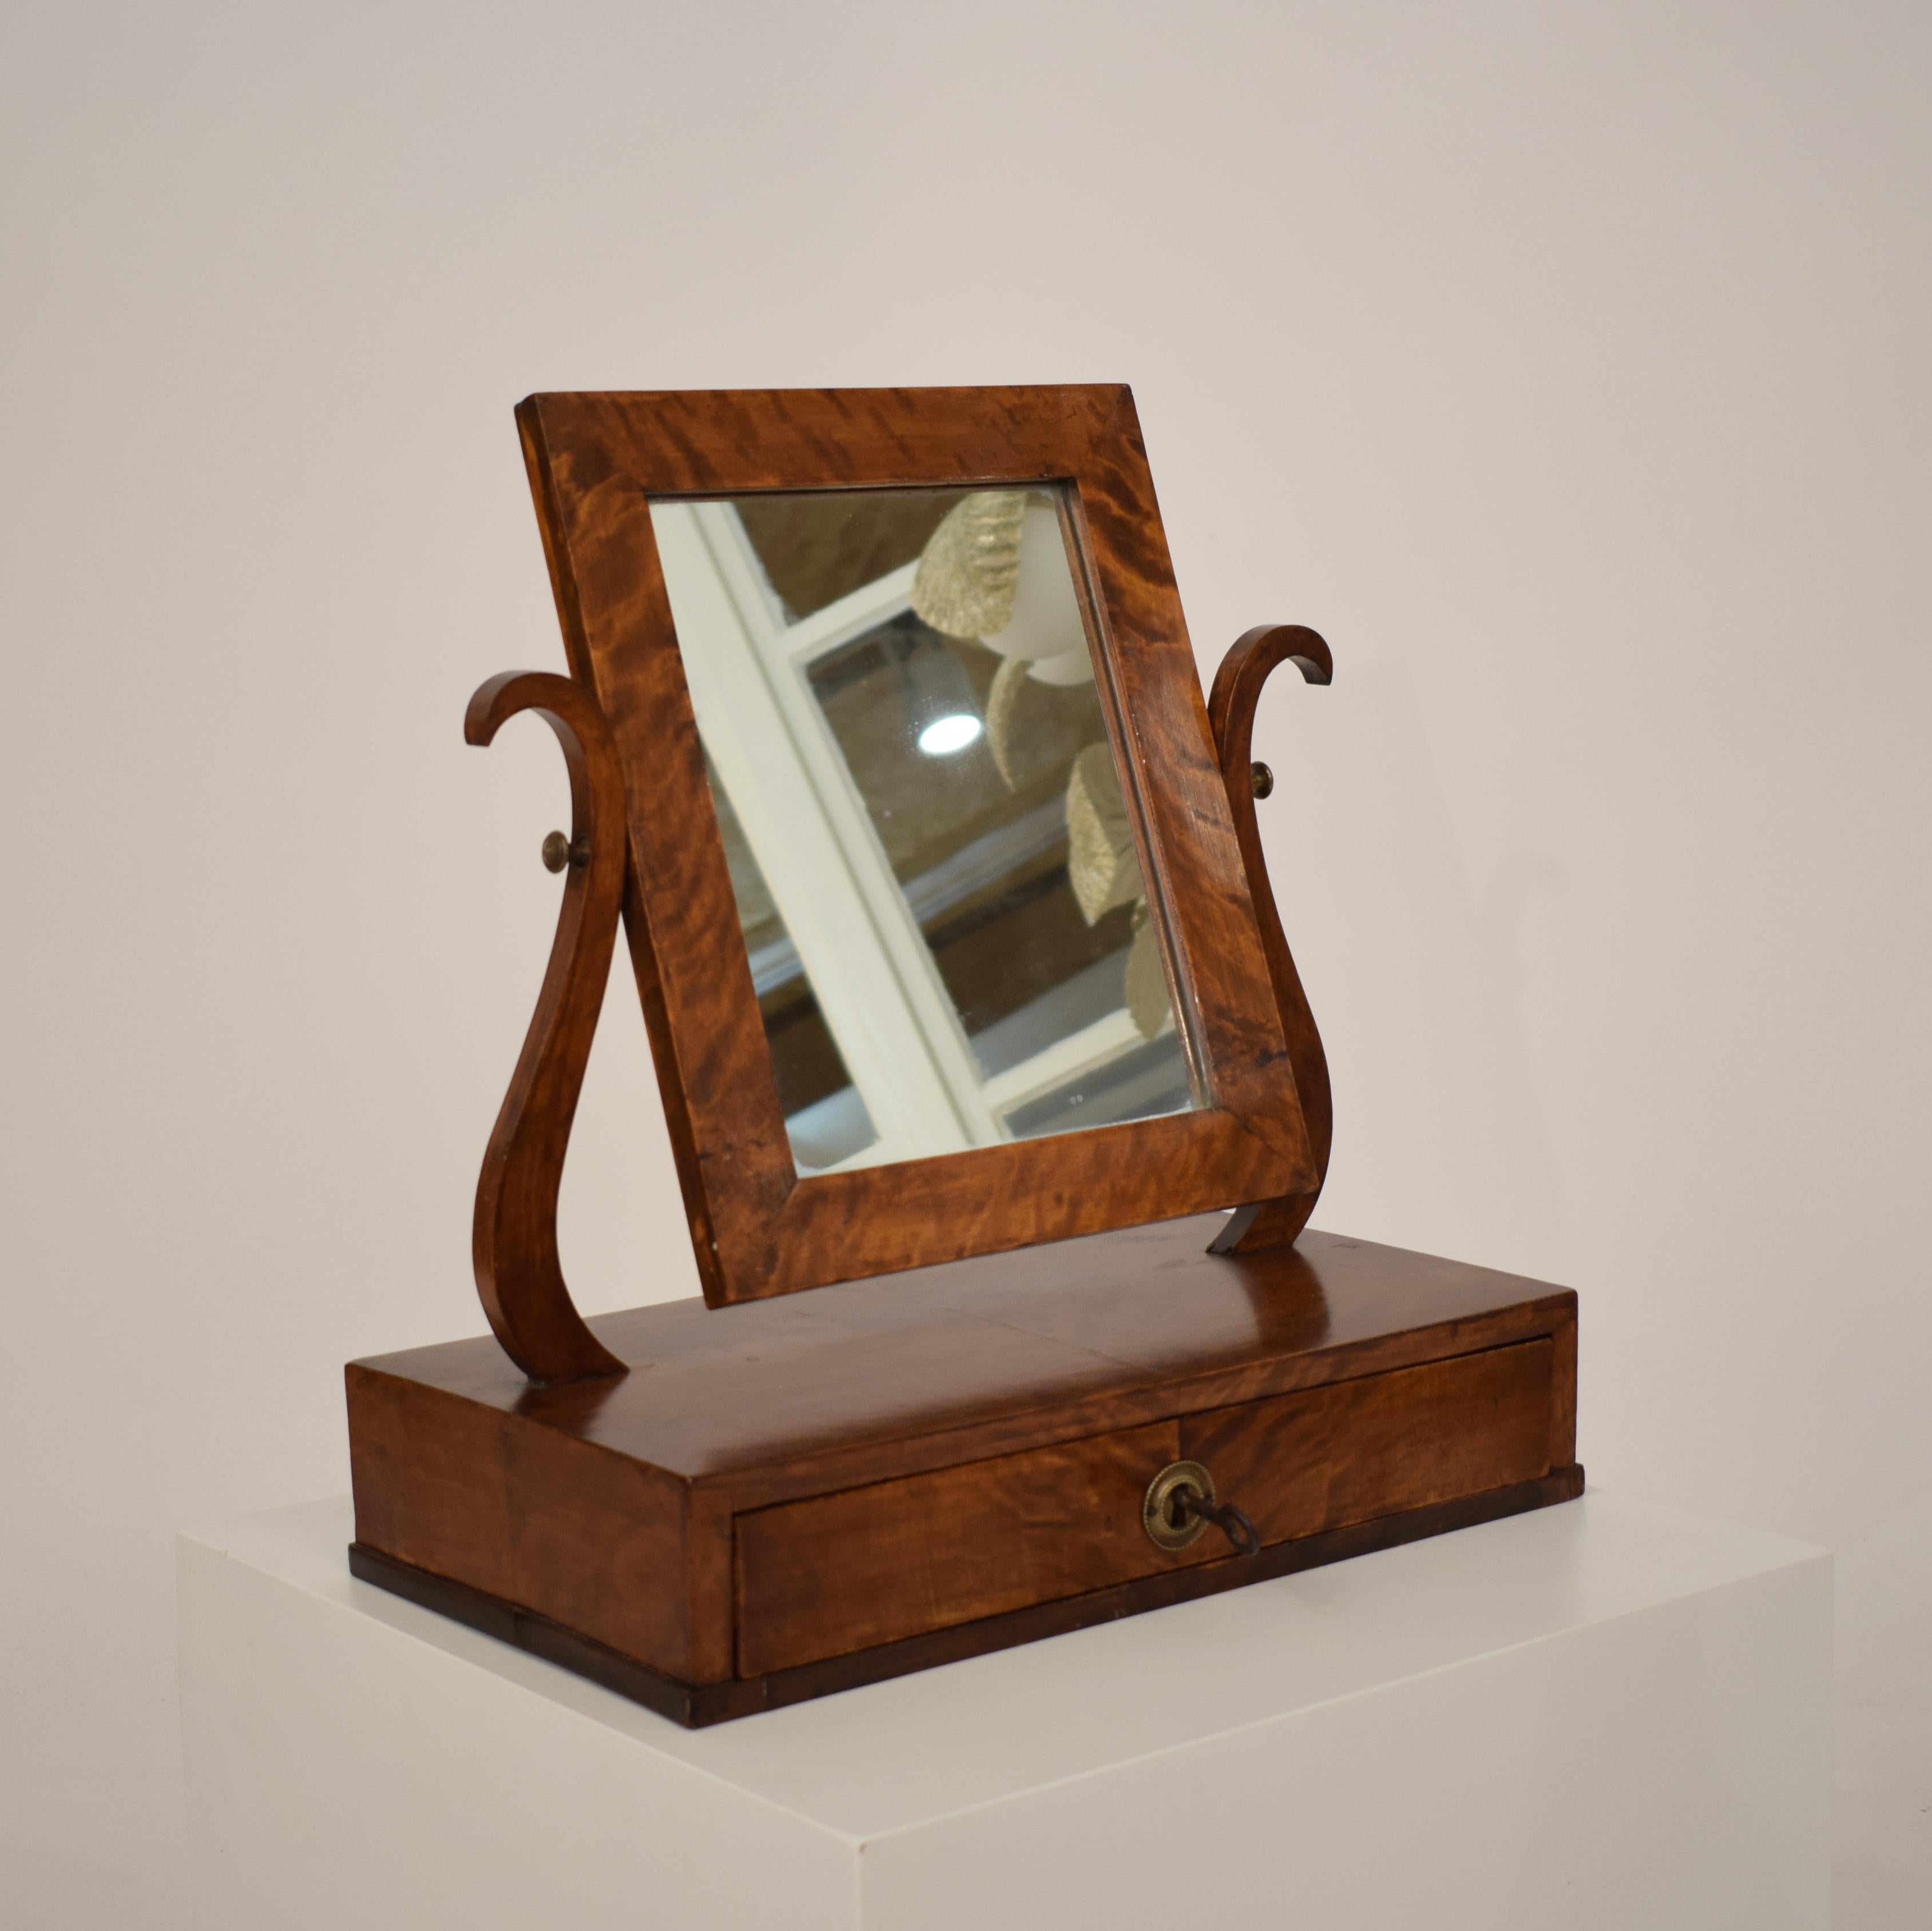 Ce beau miroir de toilette Biedermeier en bouleau allemand du 19ème siècle. Il a un tiroir et a été fabriqué vers 1820.
Il est en excellent état.
Une pièce unique qui attirera tous les regards dans votre intérieur antique, moderne, space age ou